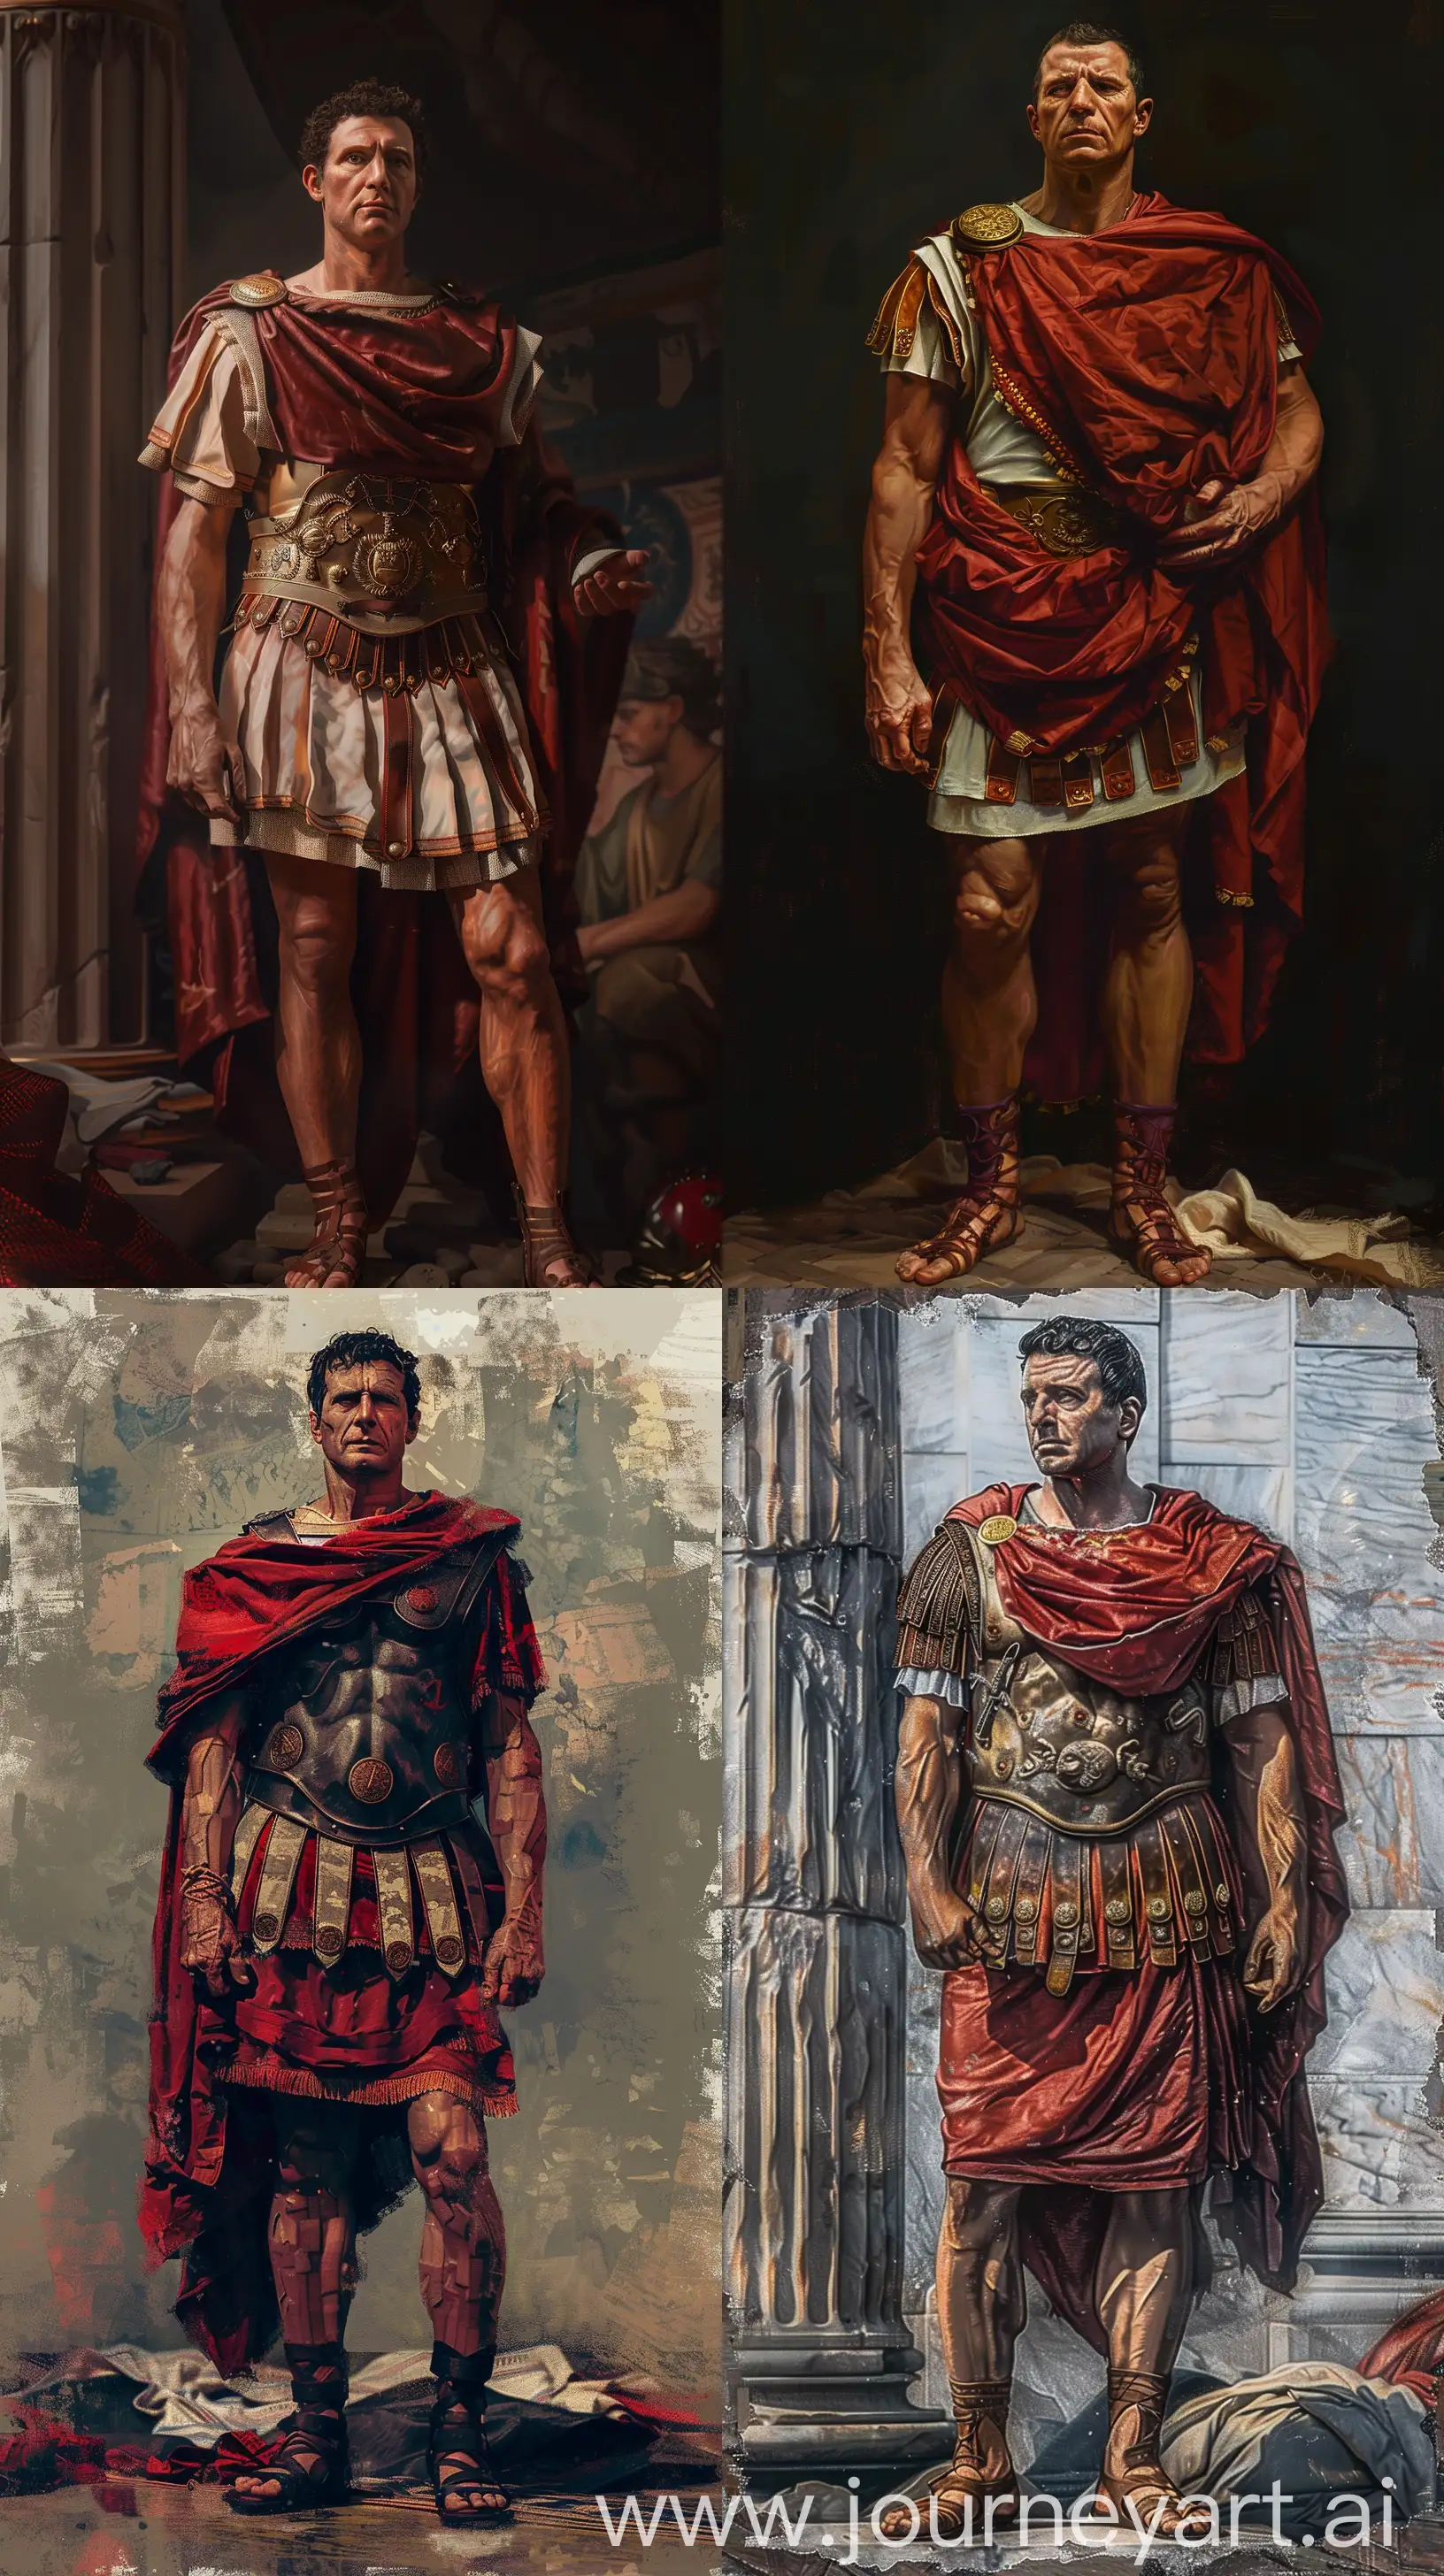 Gaius-Julius-Caesar-in-Augustus-Attire-Historical-Digital-Impressionism